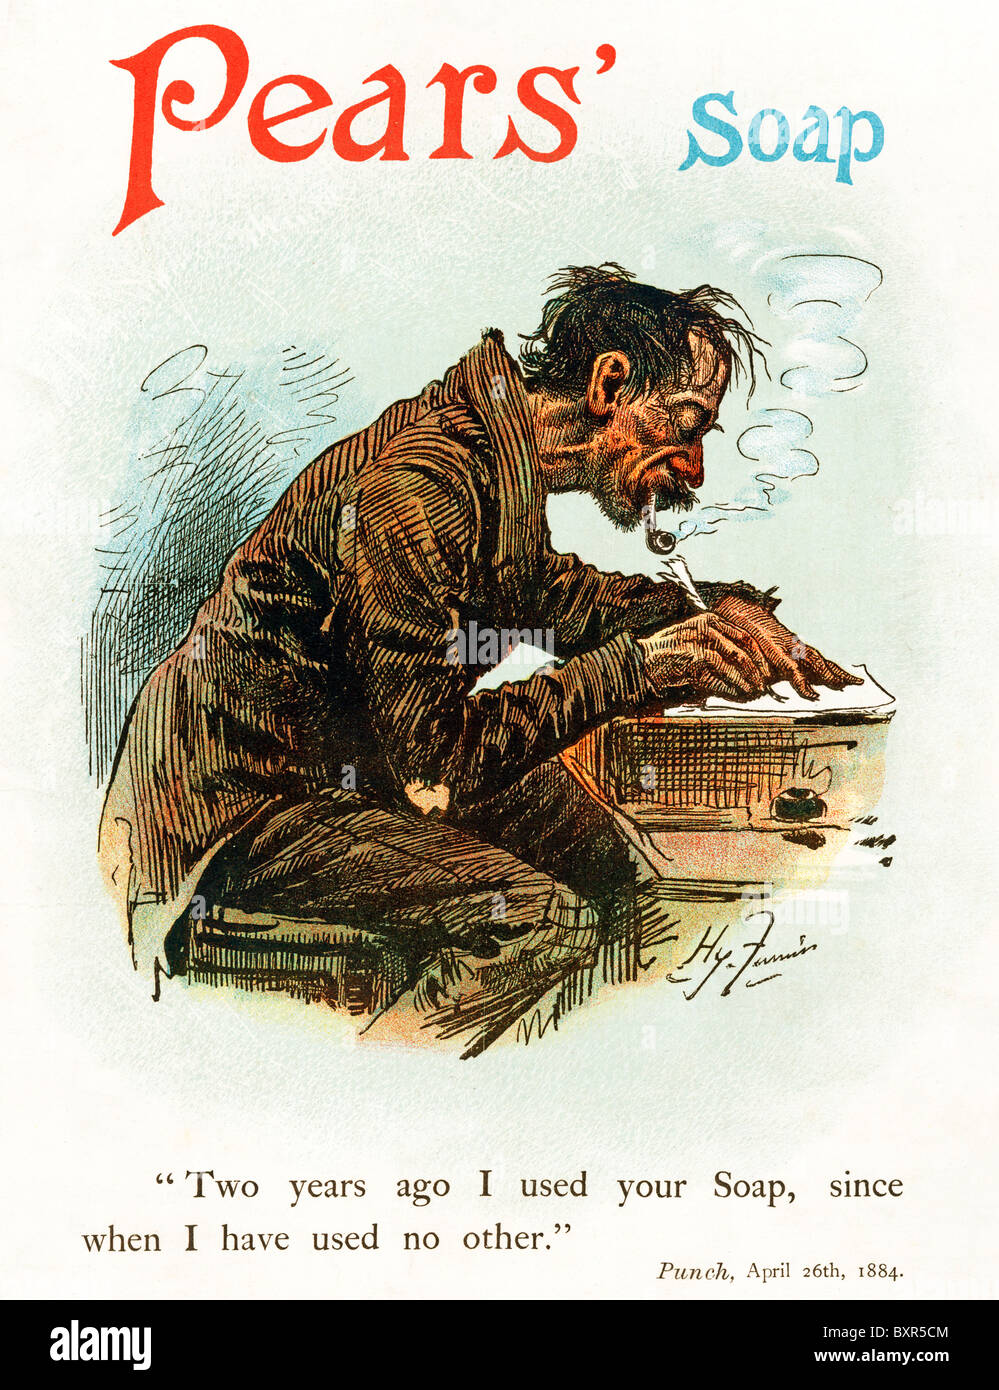 Les poires du savon, 1893 annonce à l'aide de la célèbre bande dessinée à partir de 1884 Punch Furniss occasionnelle d'une écriture à l'utilisateur les décideurs. "Il y a deux ans j'ai utilisé votre savon. Depuis, j'ai utilisé aucun autre' Banque D'Images